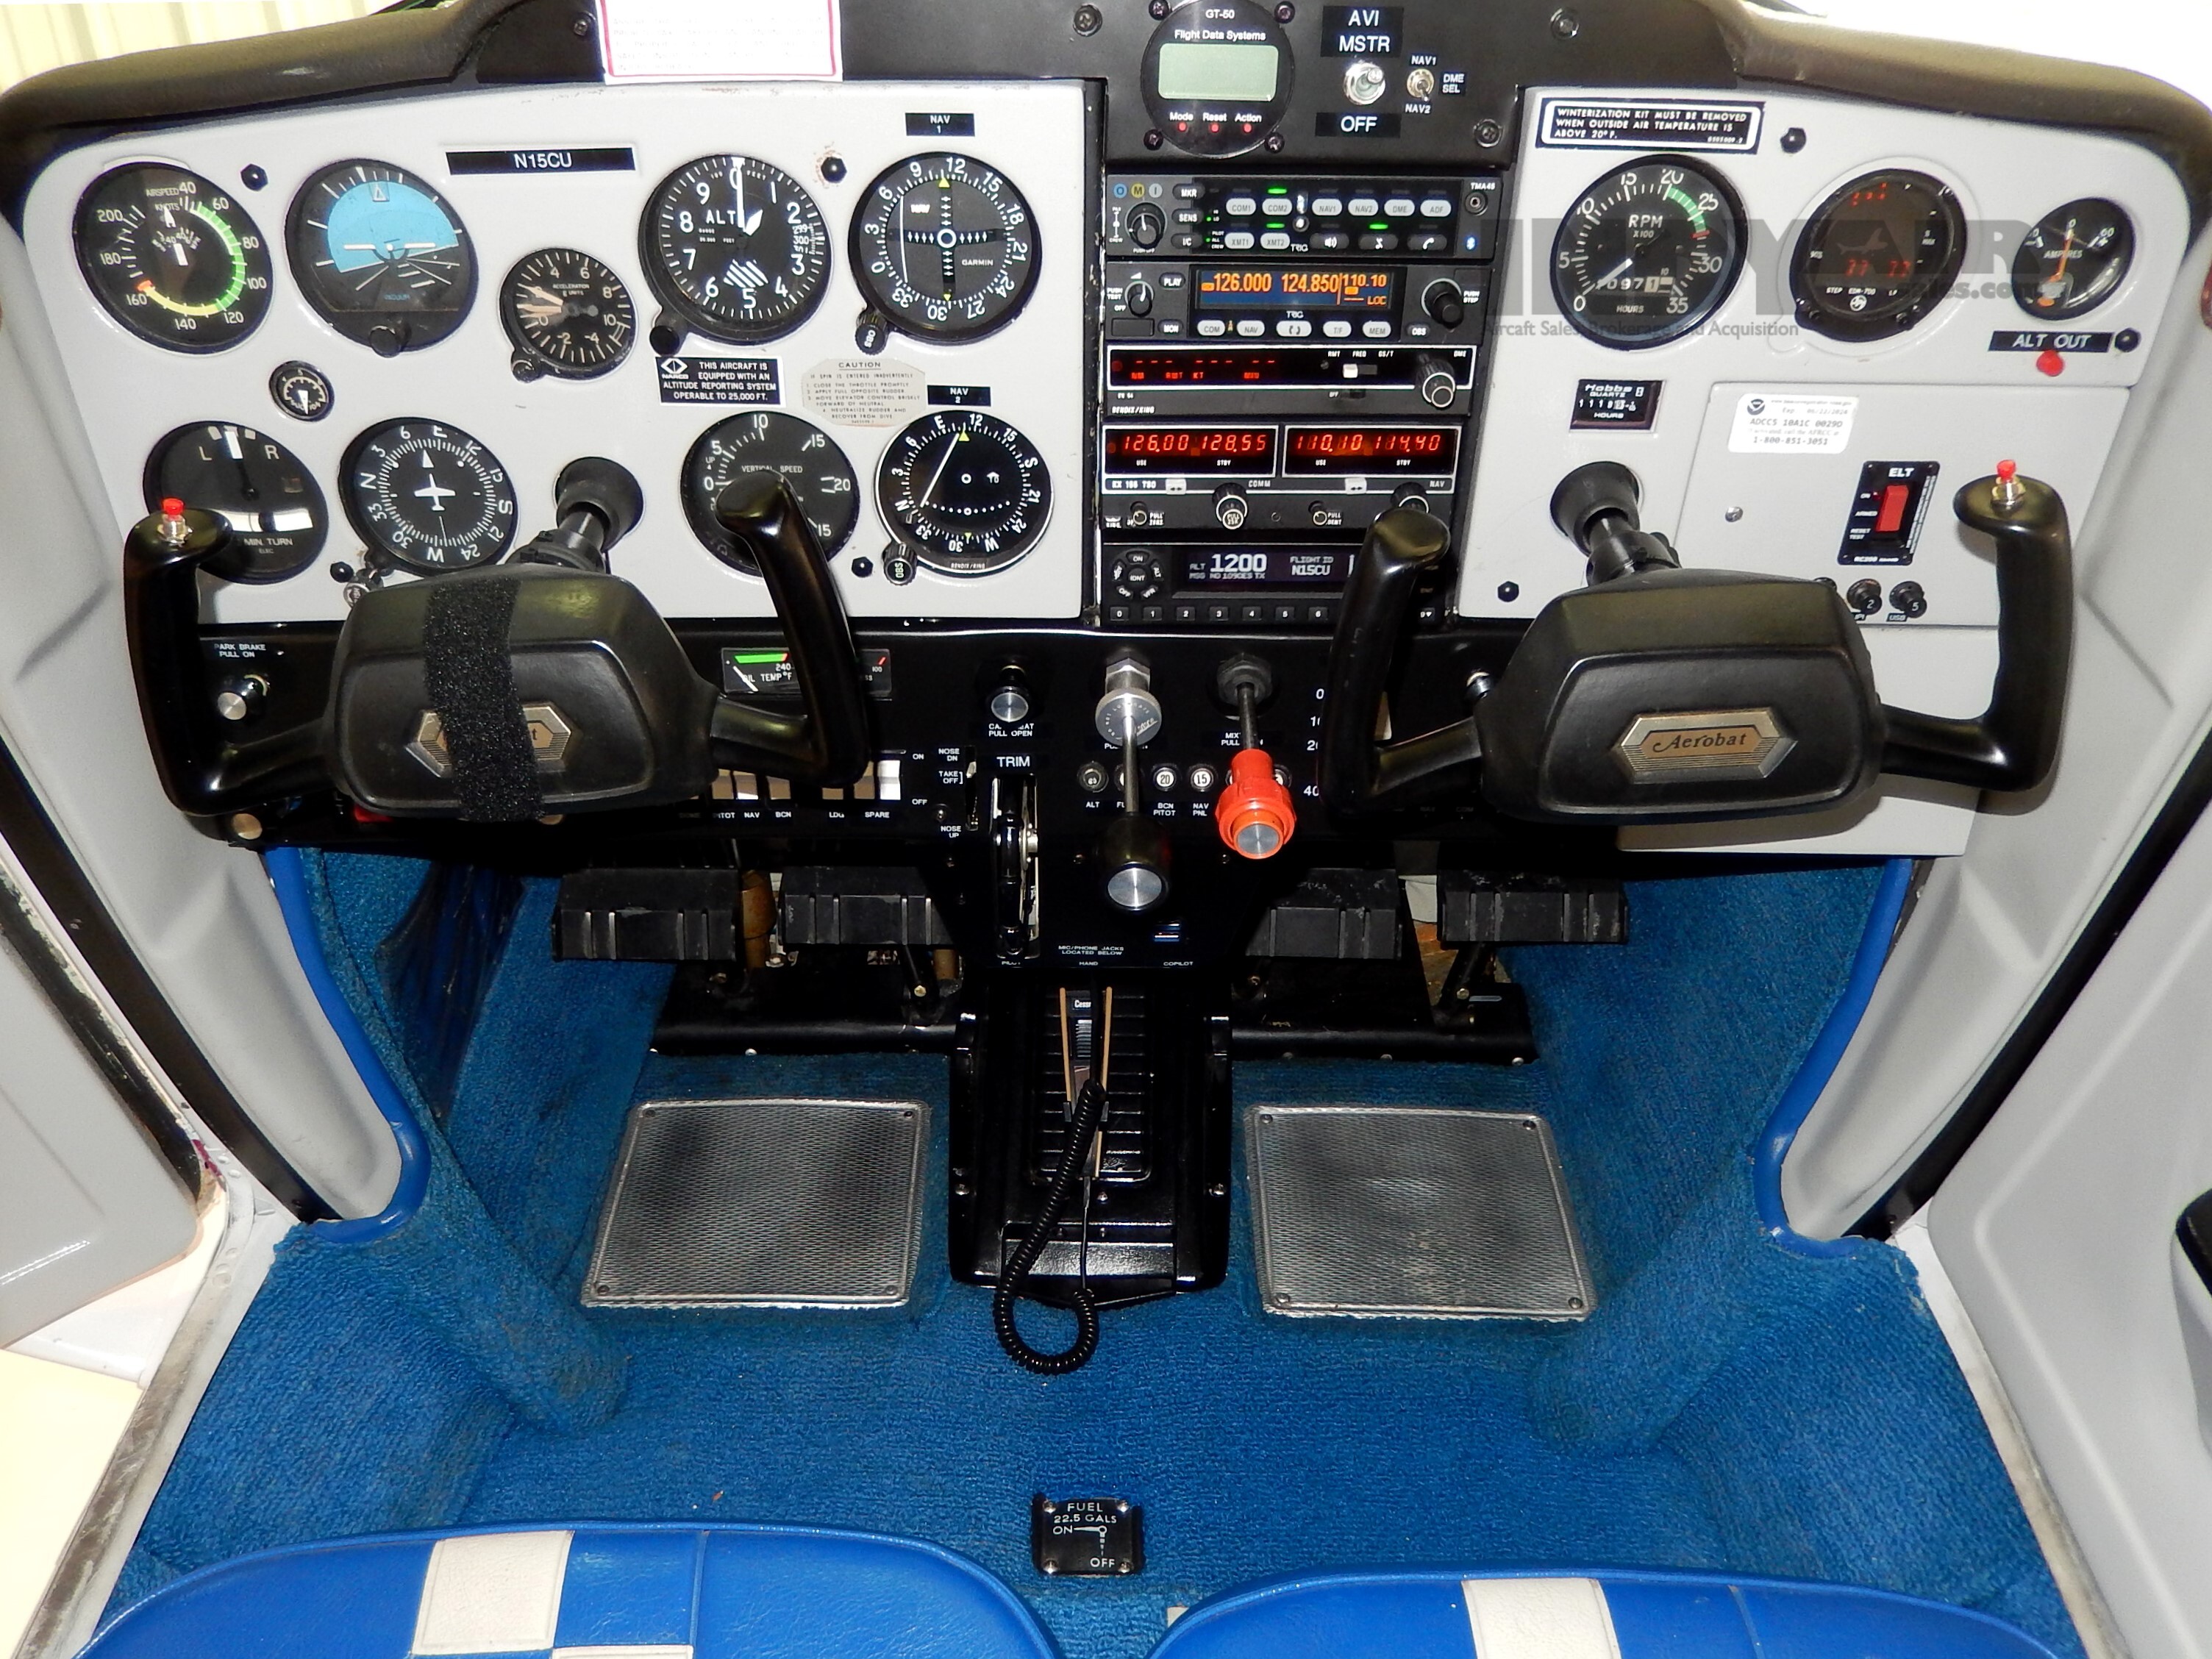 1977 Cessna A 150M - N15CU